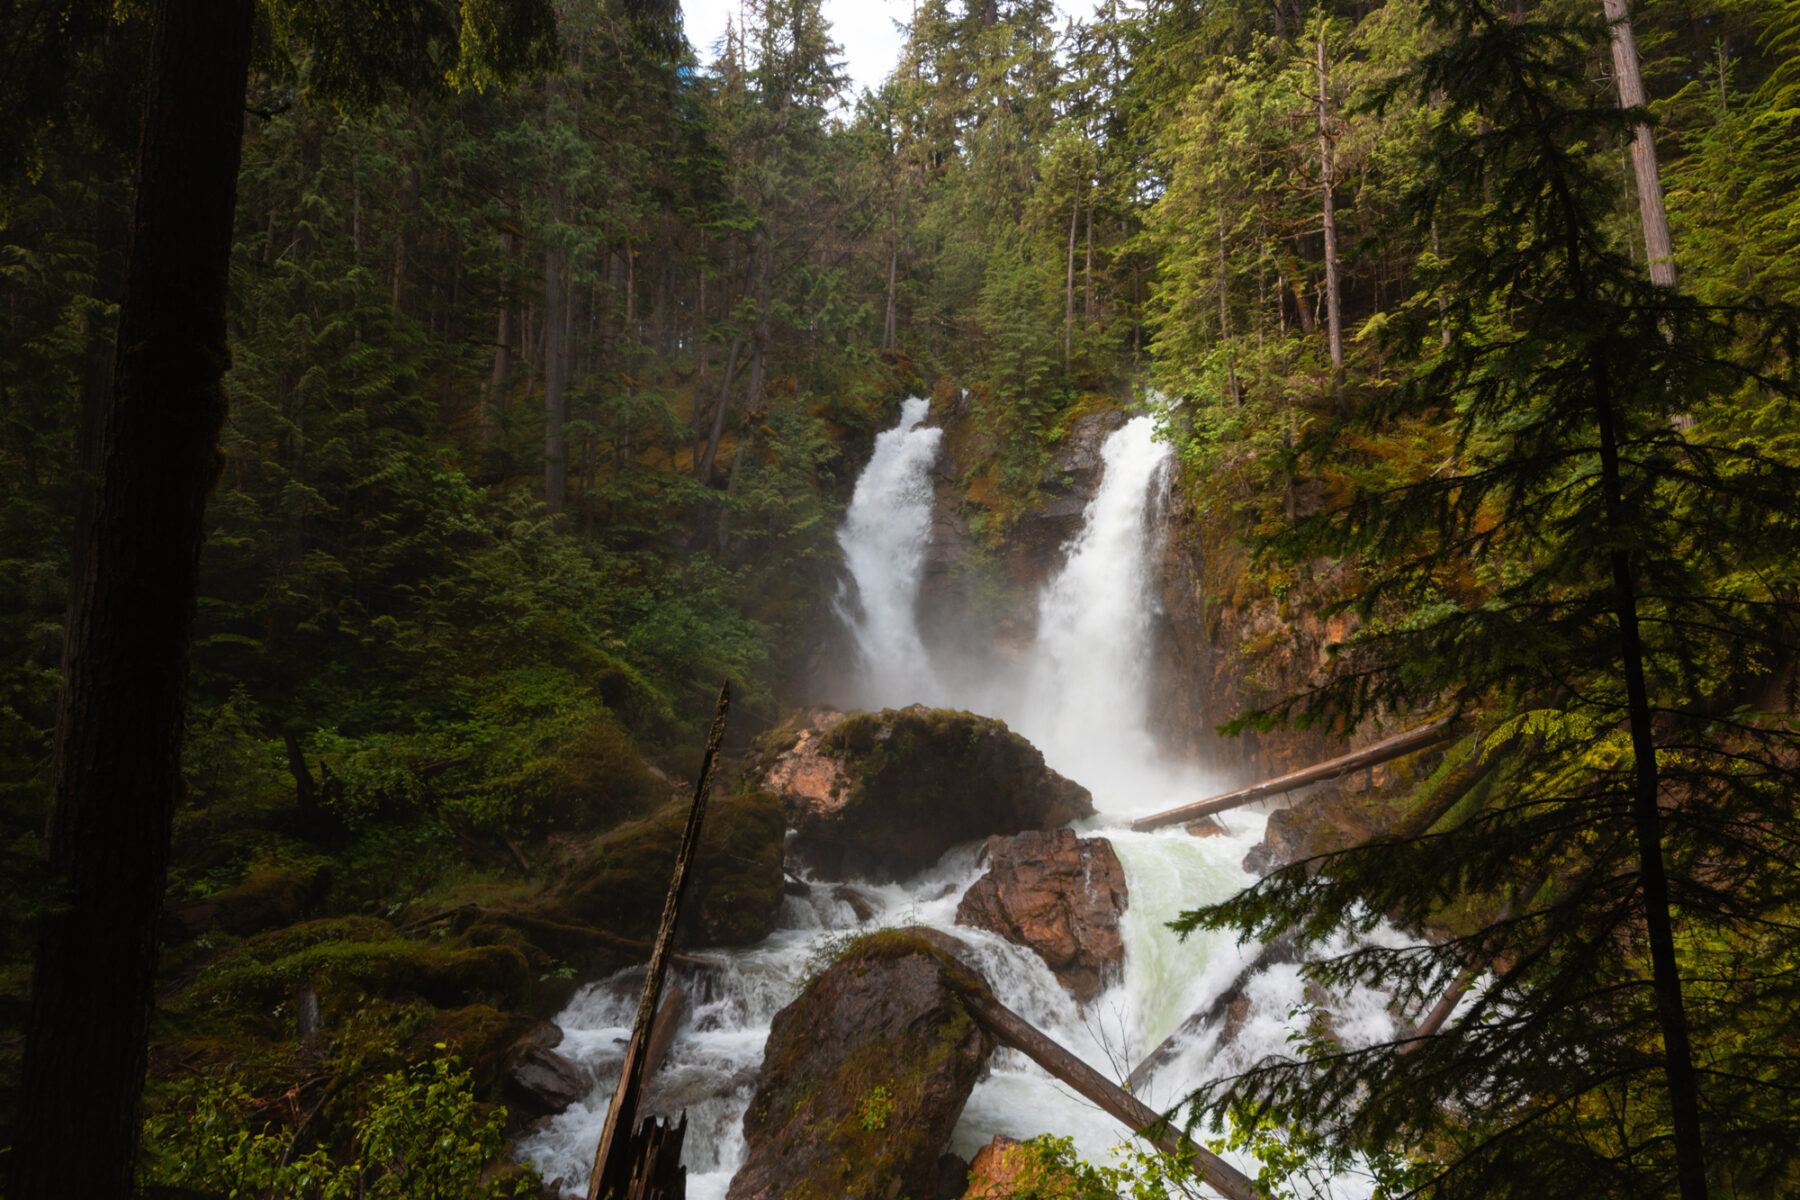 Begbie Falls is a two stream waterfall near Revelstoke BC